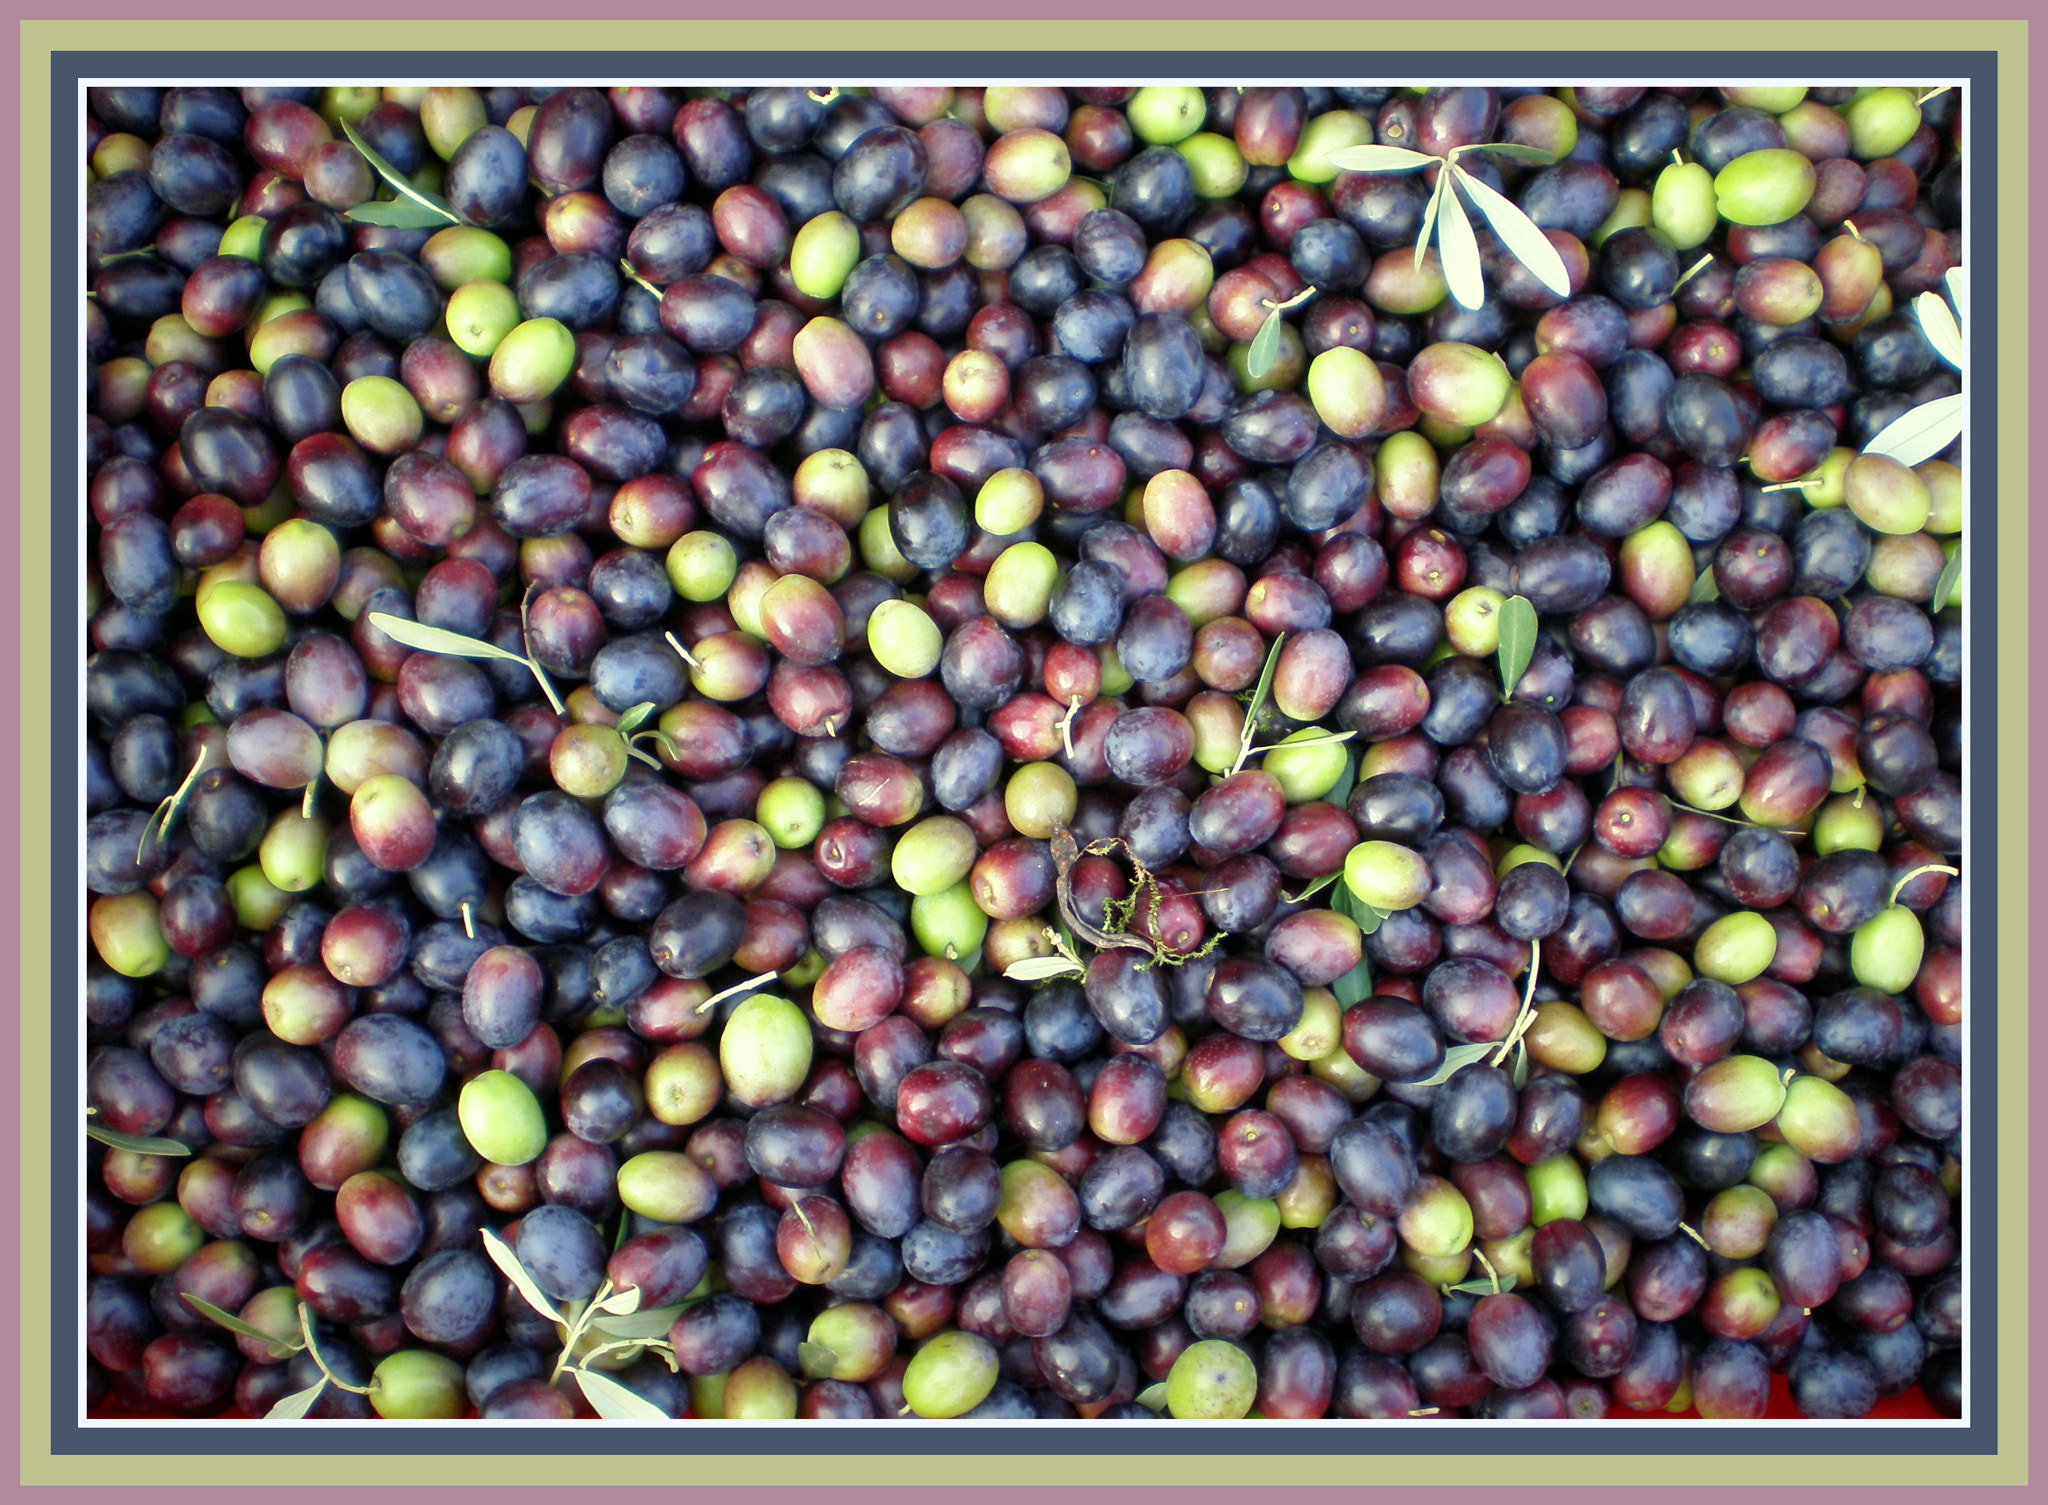 Olympus FE190/X750 sample photo. Olive harvest mocibobi photography